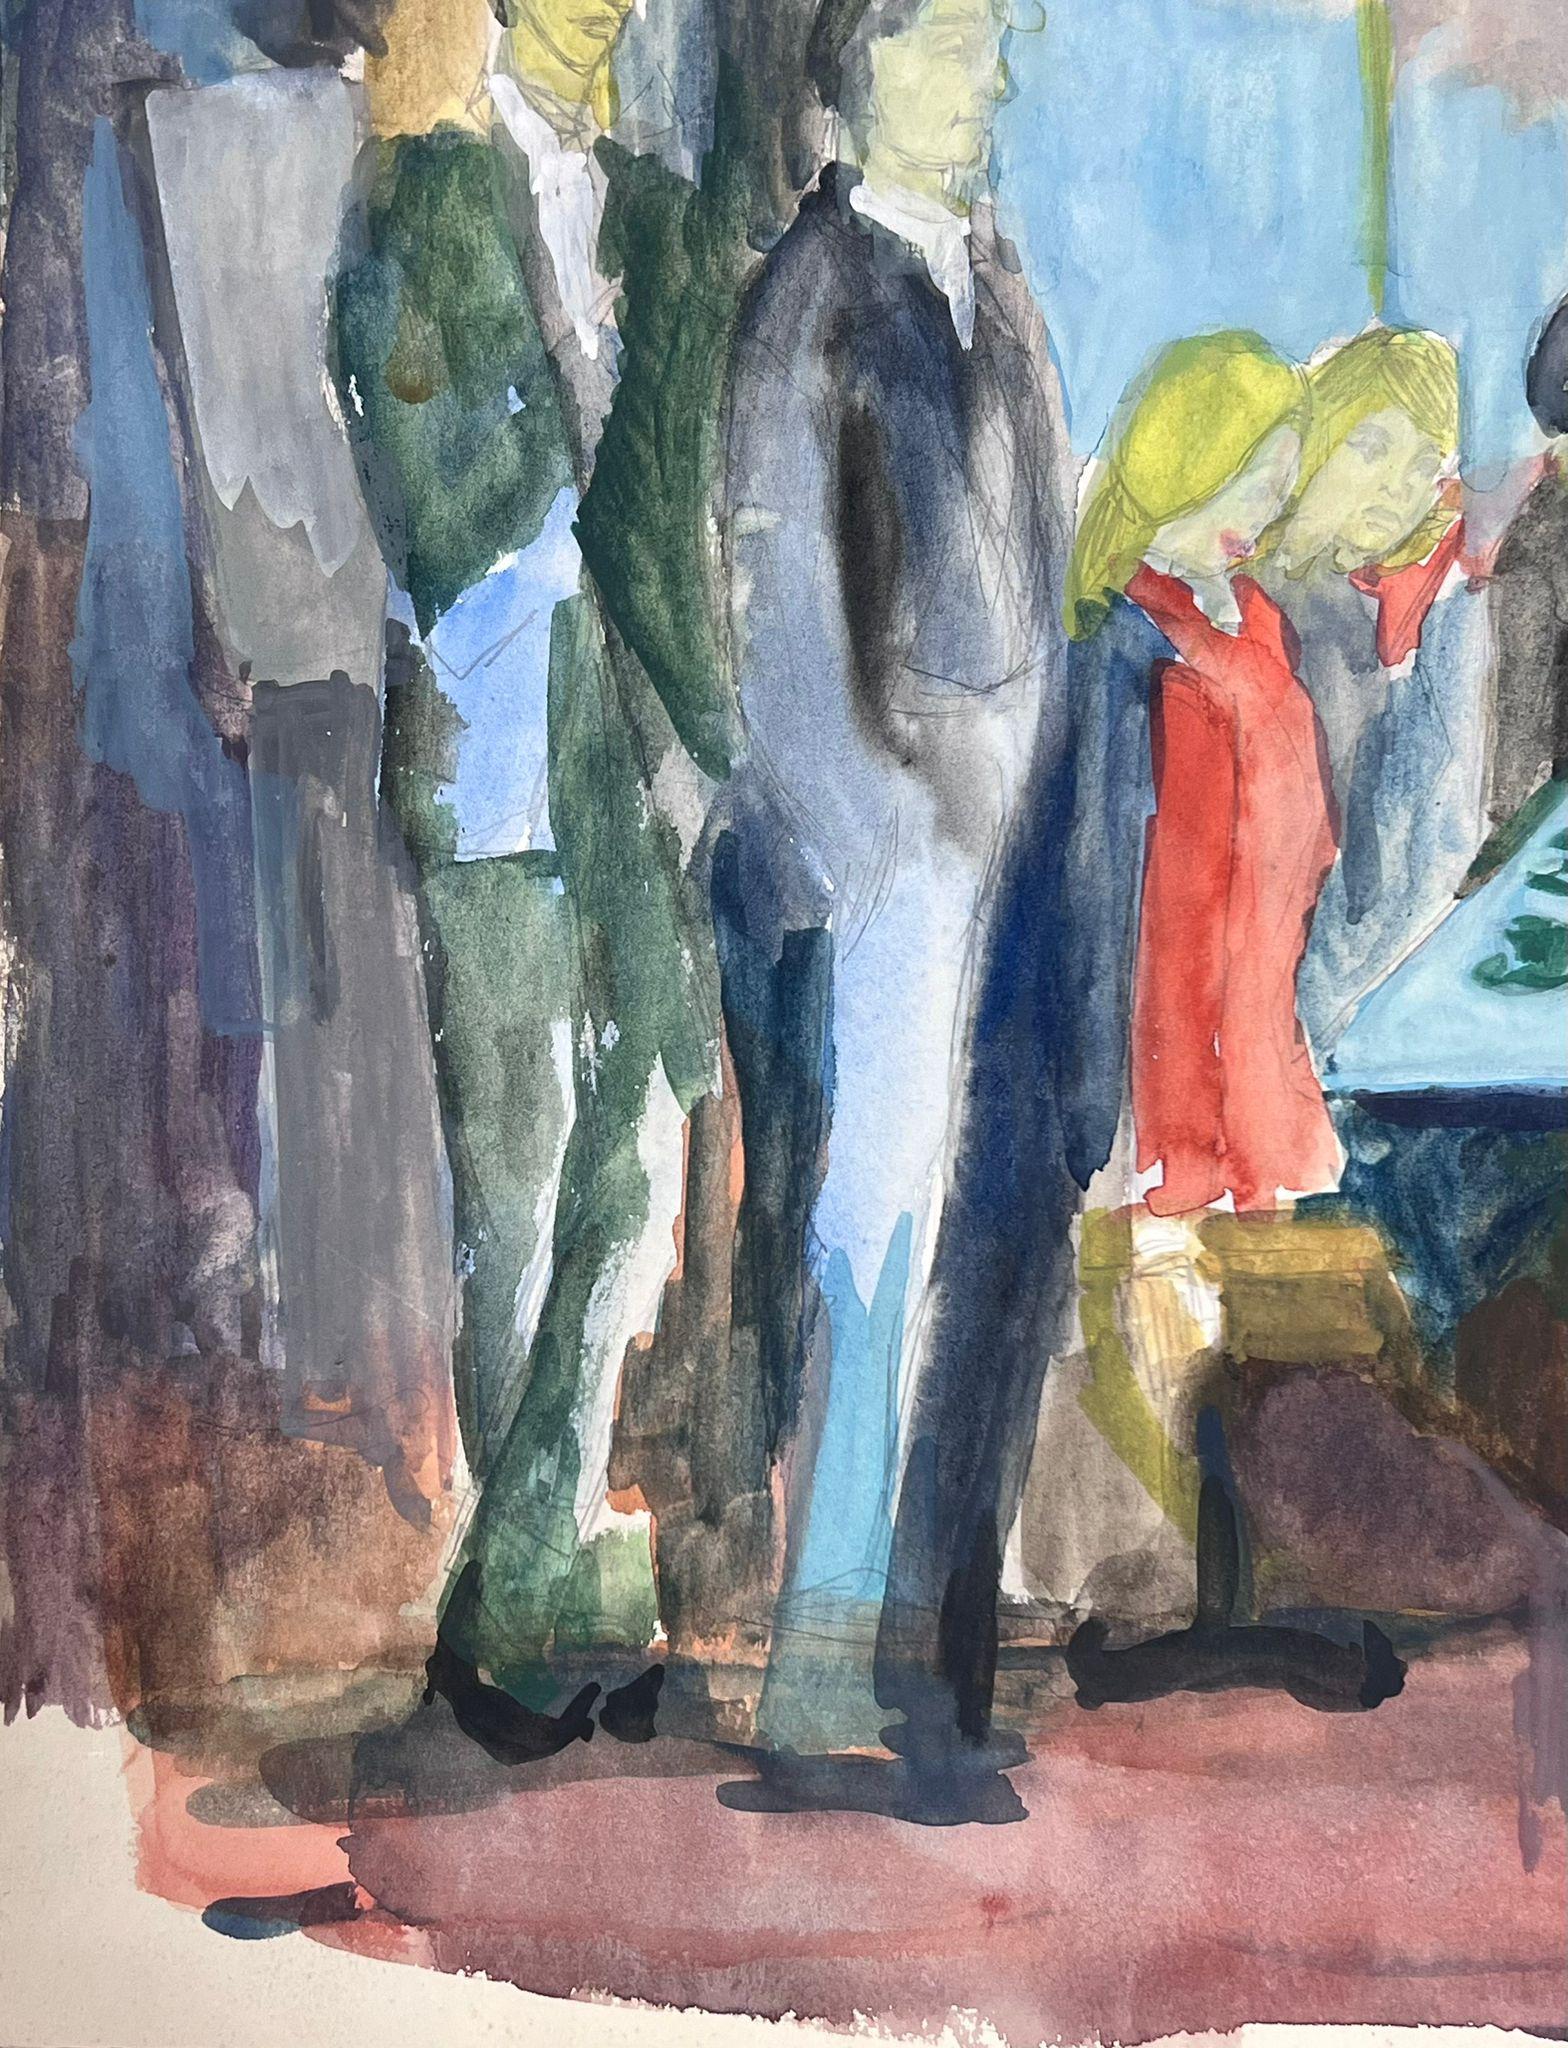 Das überfüllte Cafe
von Guy Nicod
(Französisch 1923 - 2021)
Aquarell auf Künstlerpapier, ungerahmt
Gemälde : 15 x 17,5 Zoll
Herkunft: Künstlernachlass, Frankreich
Zustand: sehr guter und gesunder Zustand